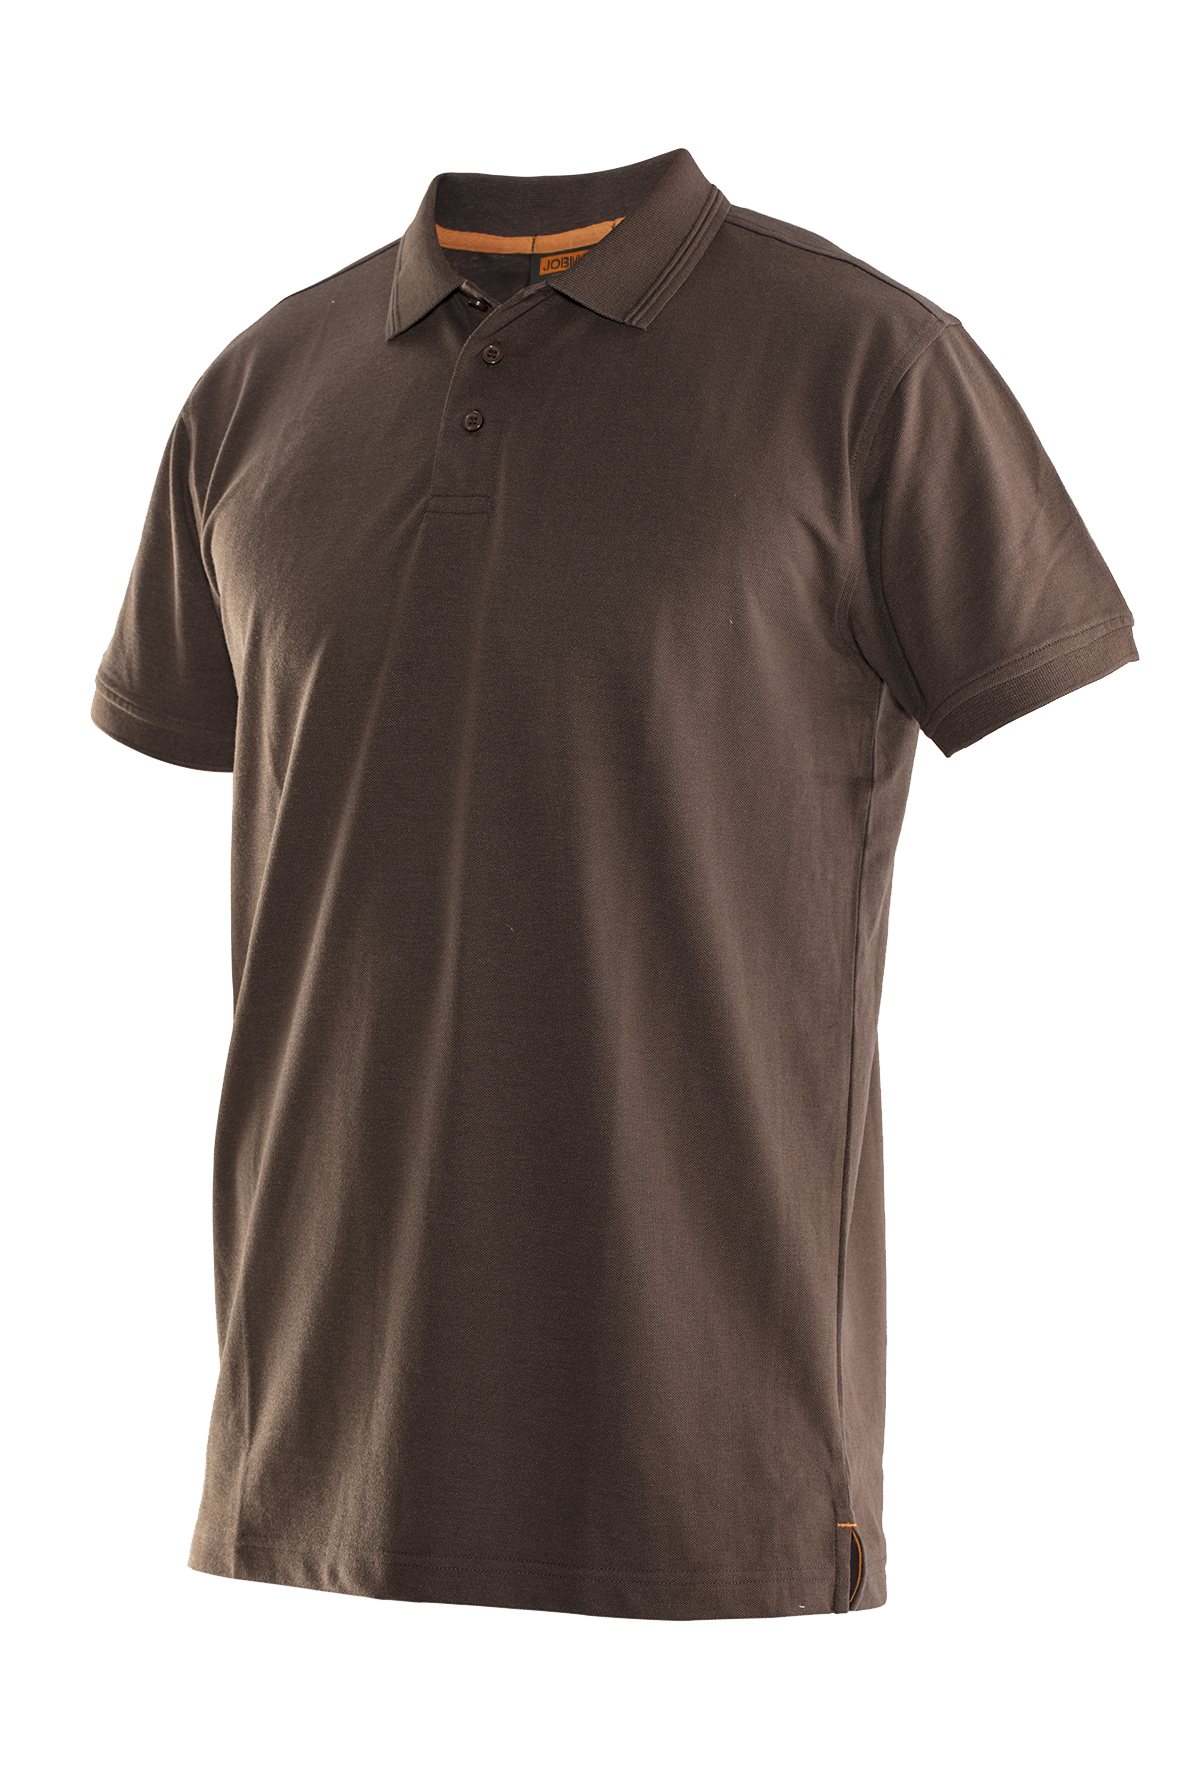 5564 T-shirt polo 3XL marron